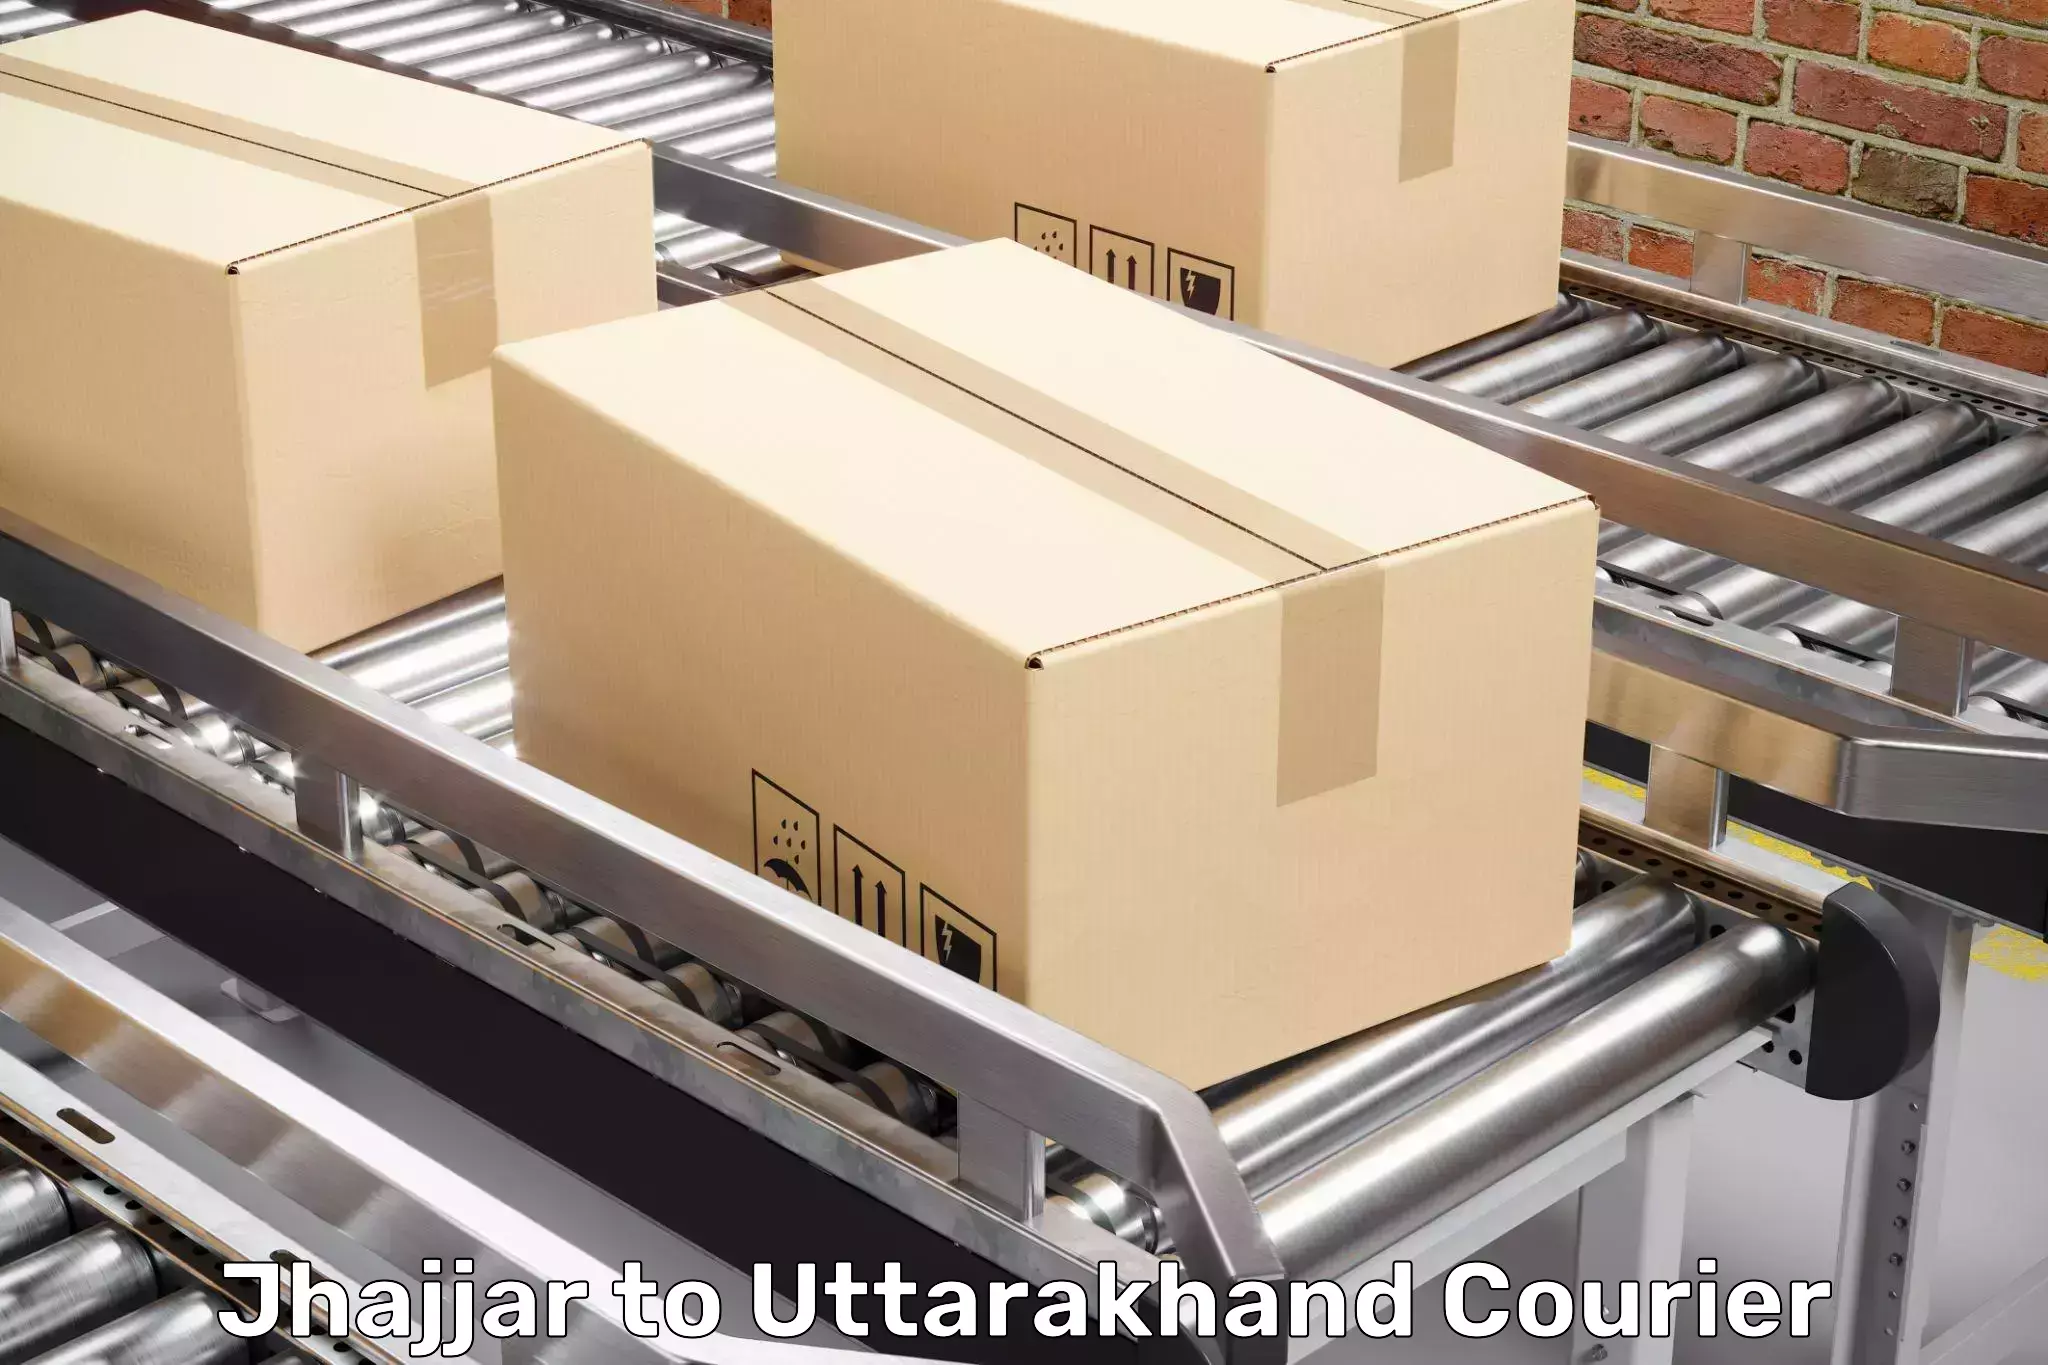 Reliable moving assistance Jhajjar to Rudraprayag